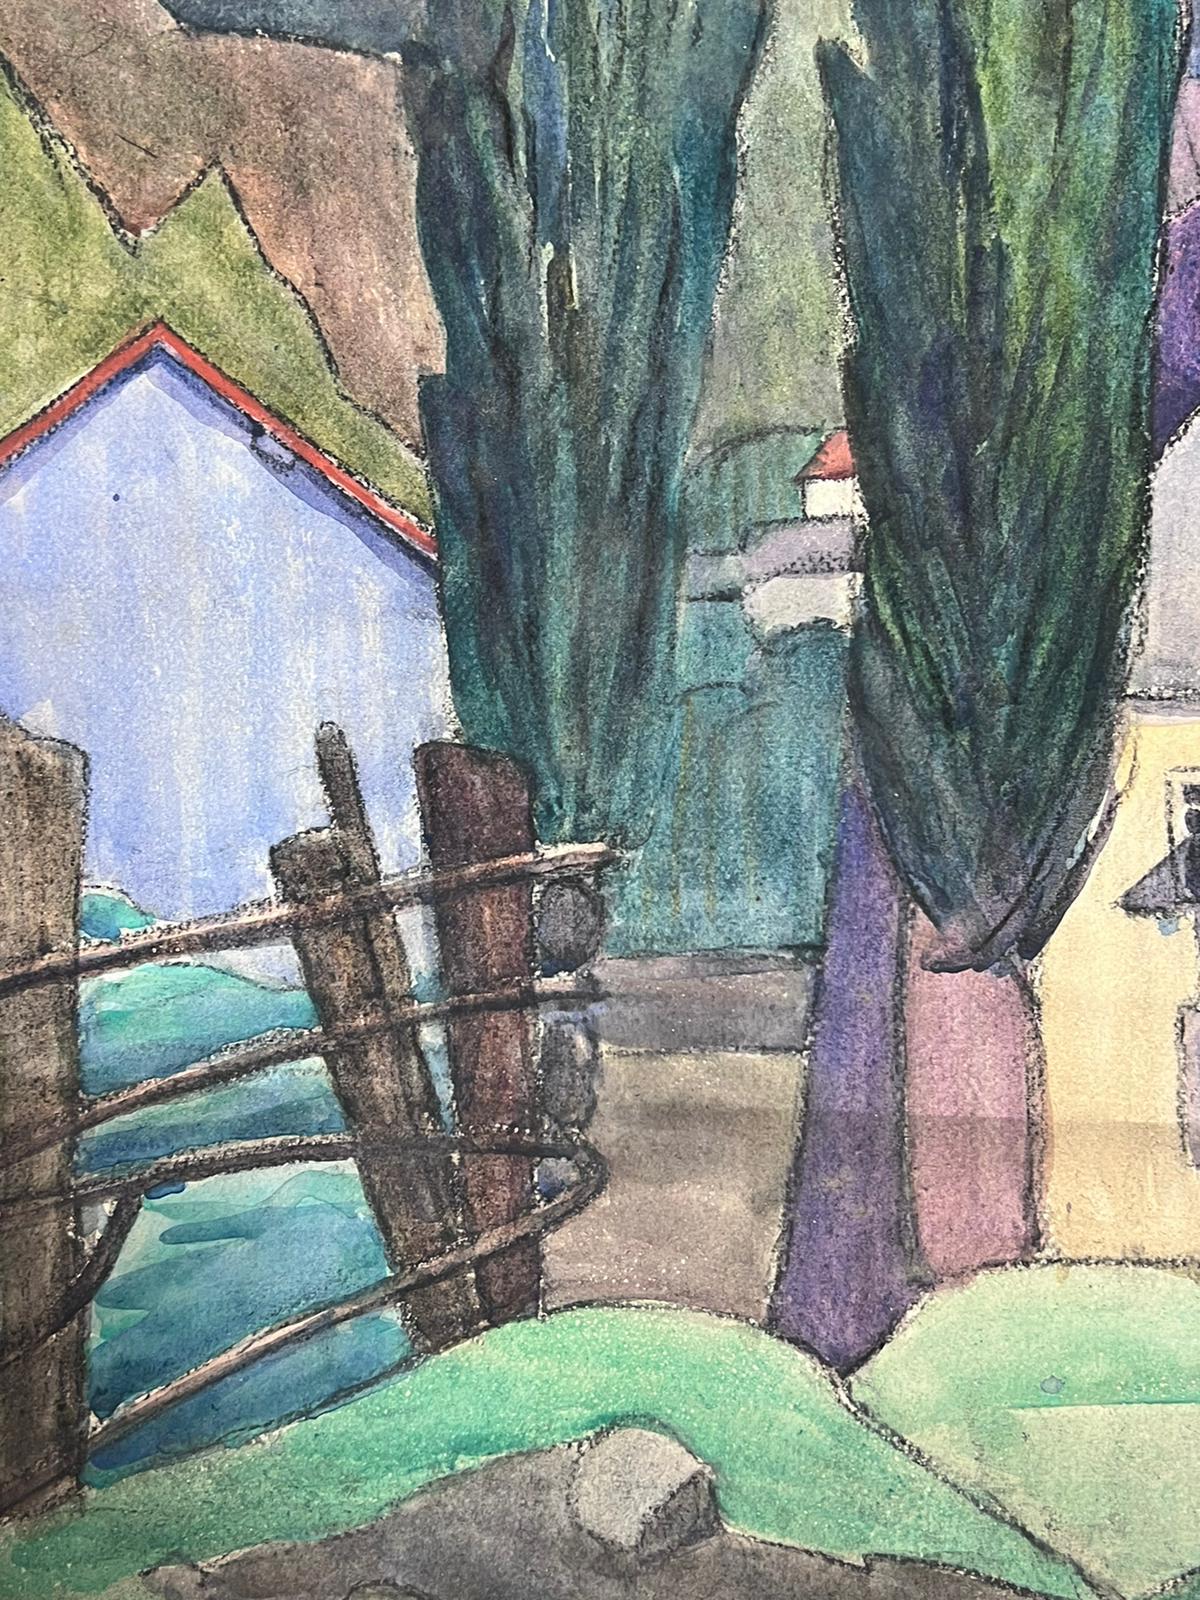 Französische Landschaft
von Louise Alix, französische Impressionistin der 1950er Jahre 
Aquarell auf Künstlerpapier, ungerahmt
Gemälde: 25 x 16 Zoll
Provenienz: aus einer großen Privatsammlung dieses Künstlers in Nordfrankreich
Zustand: originaler,